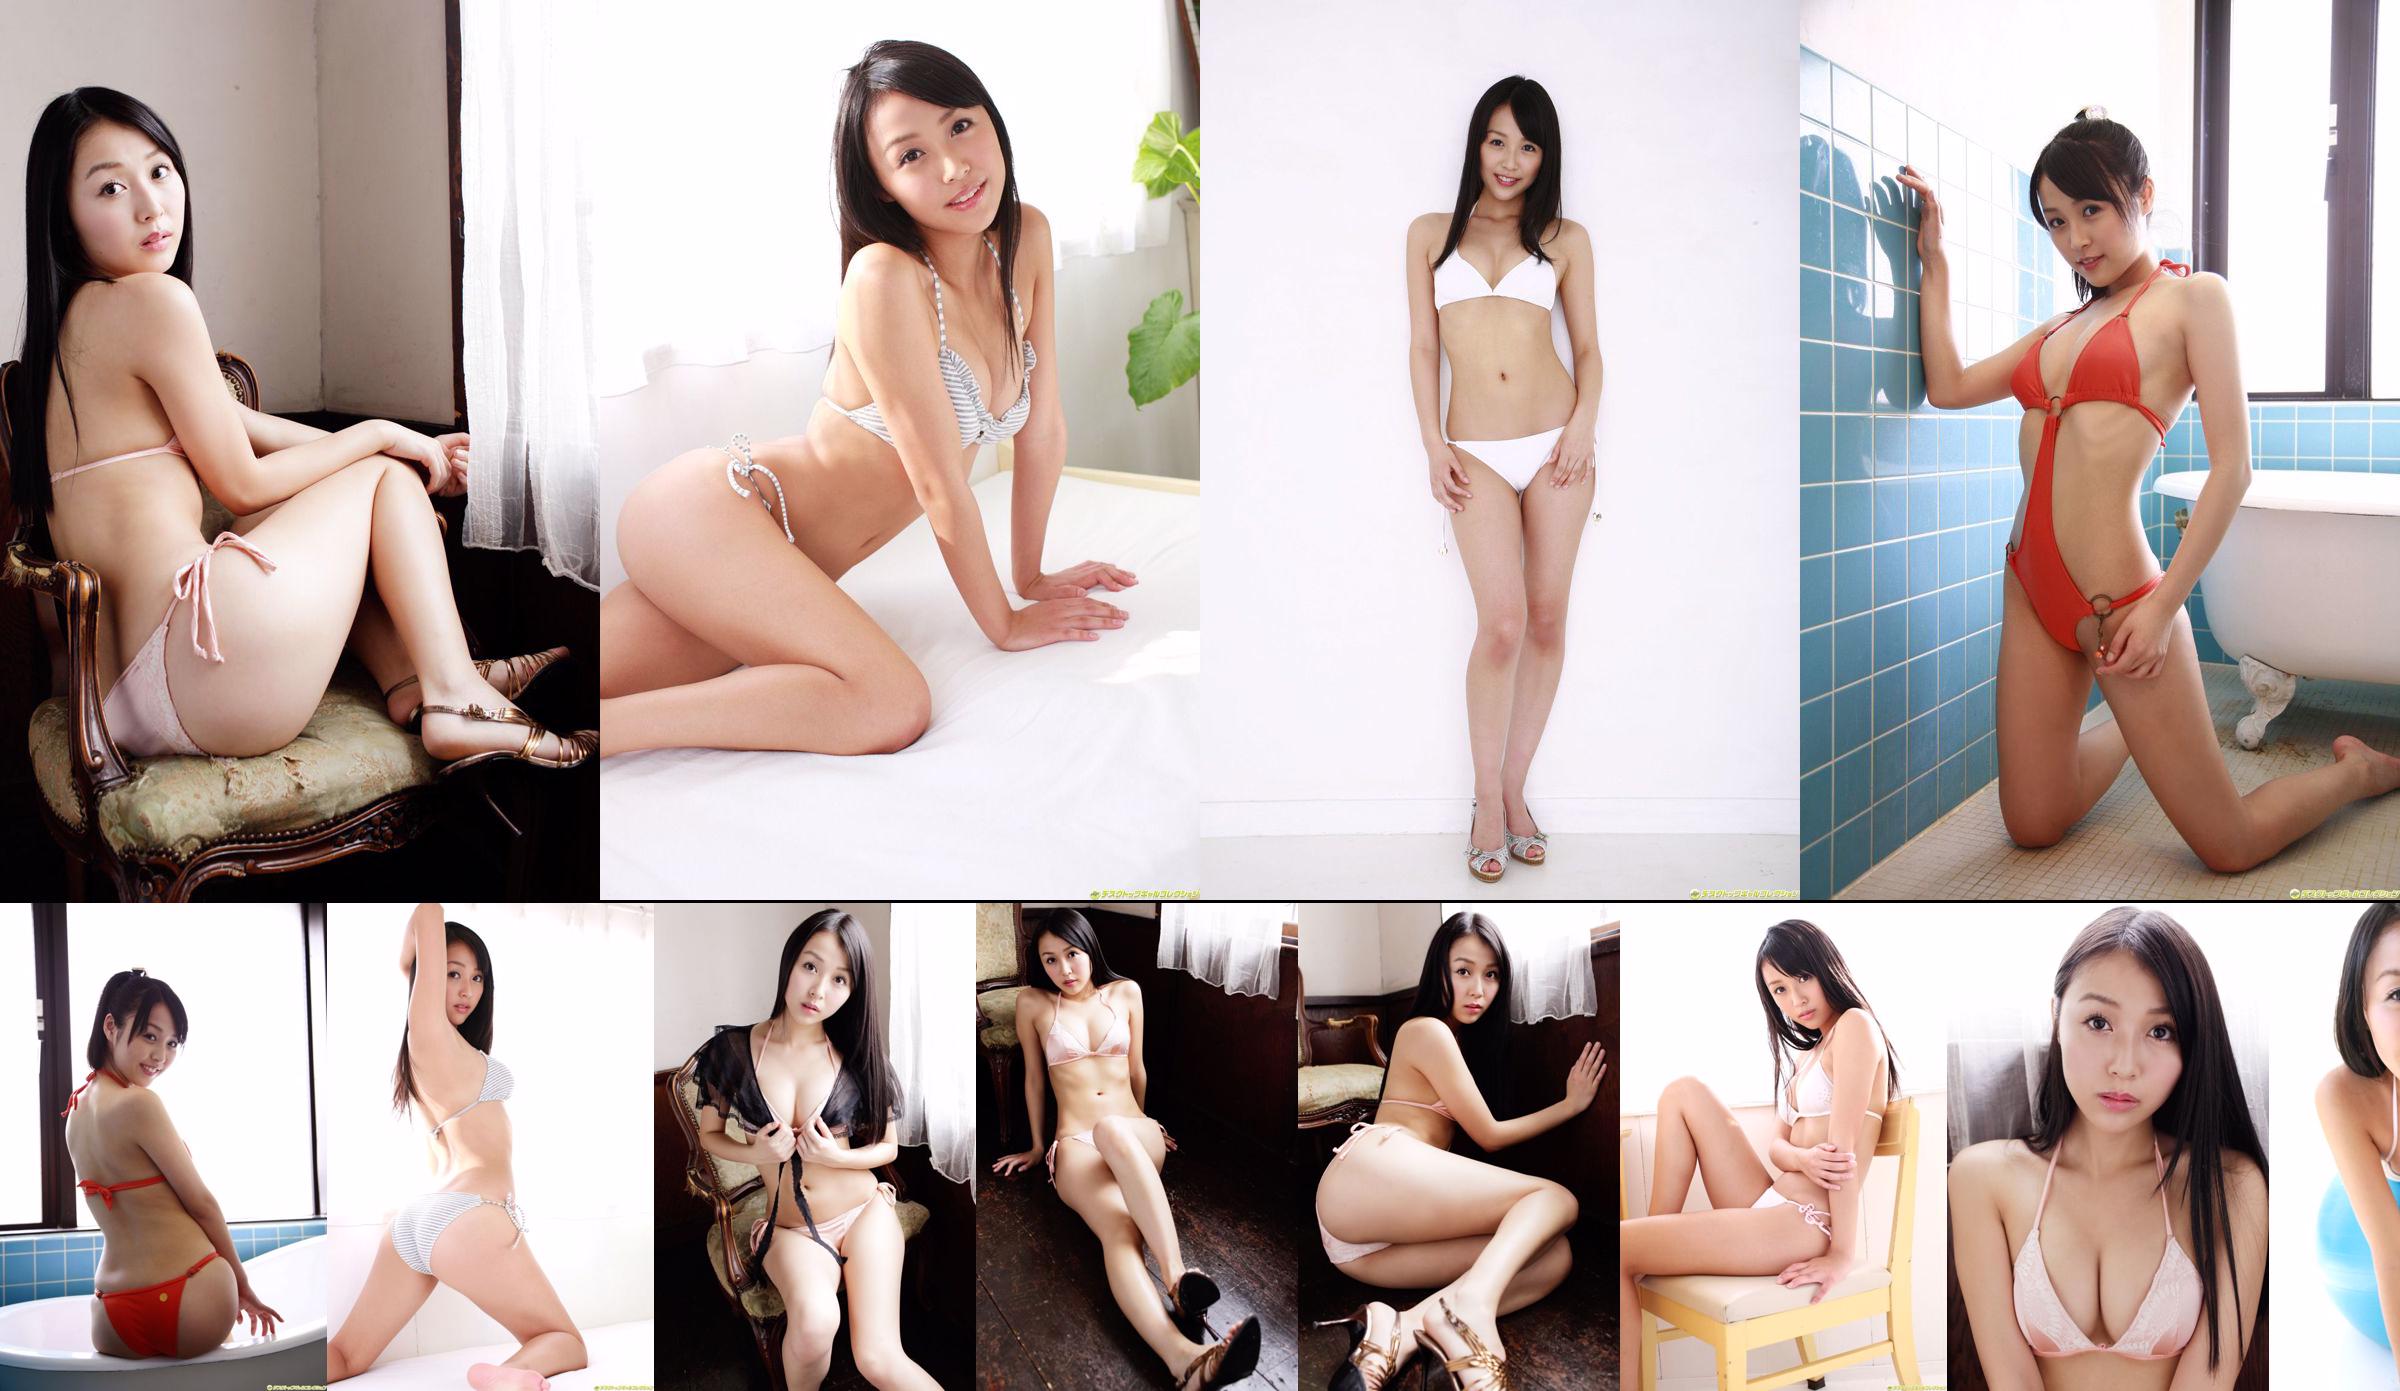 [DGC] NO.605 Watanabe Miyu / Watanabe Miyu "JETZT frisch gepflückter Tiefdruck!" No.a7988e Seite 2